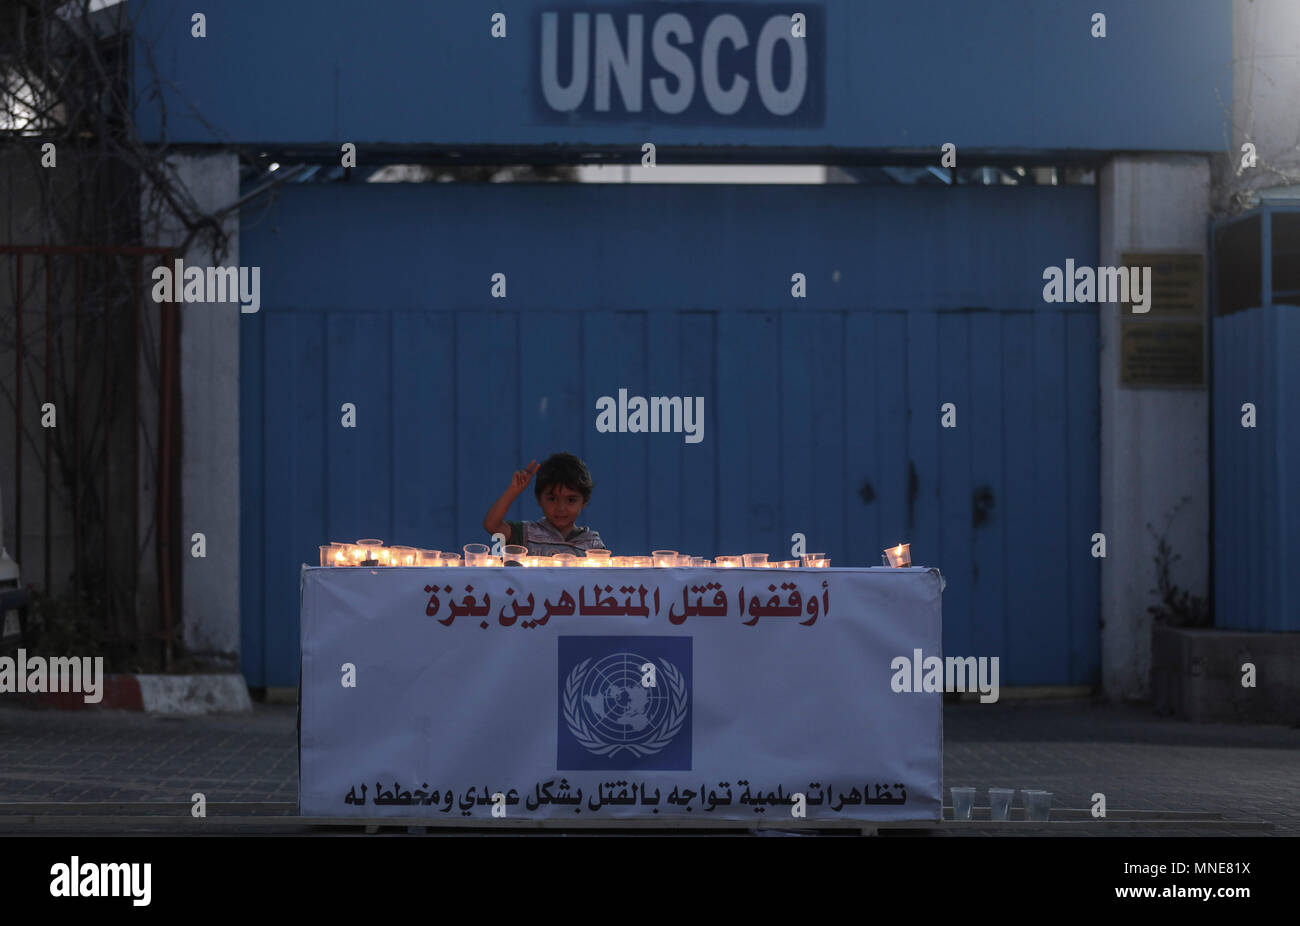 Ein palästinensischer Junge steht hinter Kerzen während einer Mahnwache für die Opfer der Israel-Gaza Zusammenstößen an der Grenze, an der Pforte des UN-Sonderkoordinators für den Nahost-friedensprozess (UNSCO) in Gaza, Gazastreifen, 16. Mai 2018. Mehr als 60 Palästinenser getötet und etwa 2.400 während der massenproteste entlang der Grenze auf der 70. Jahrestag der Nakba Tag (Tag der Katastrophe), die die Vertreibung vor und der Israelischen Unabhängigkeitserklärung 1948 folgte Marken verletzt wurden. Foto: Wissam Nassar/dpa Stockfoto